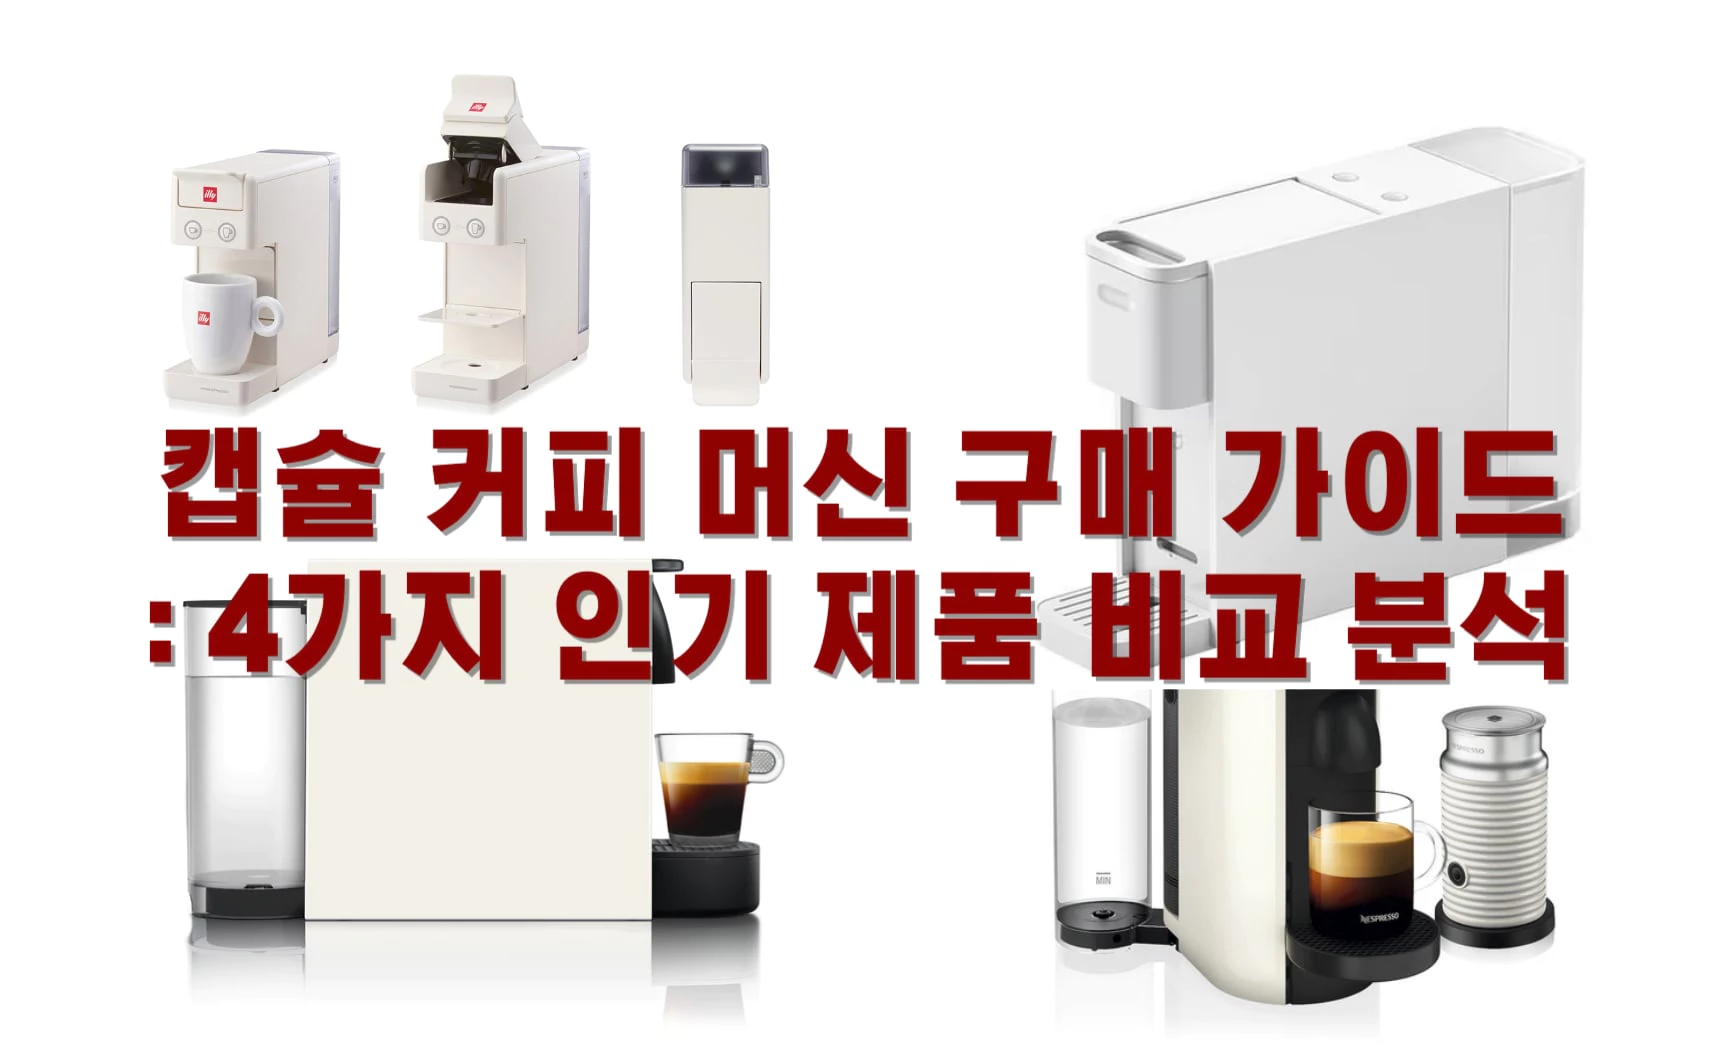 캡슐 커피 머신 구매 가이드: 4가지 인기 제품 비교 분석